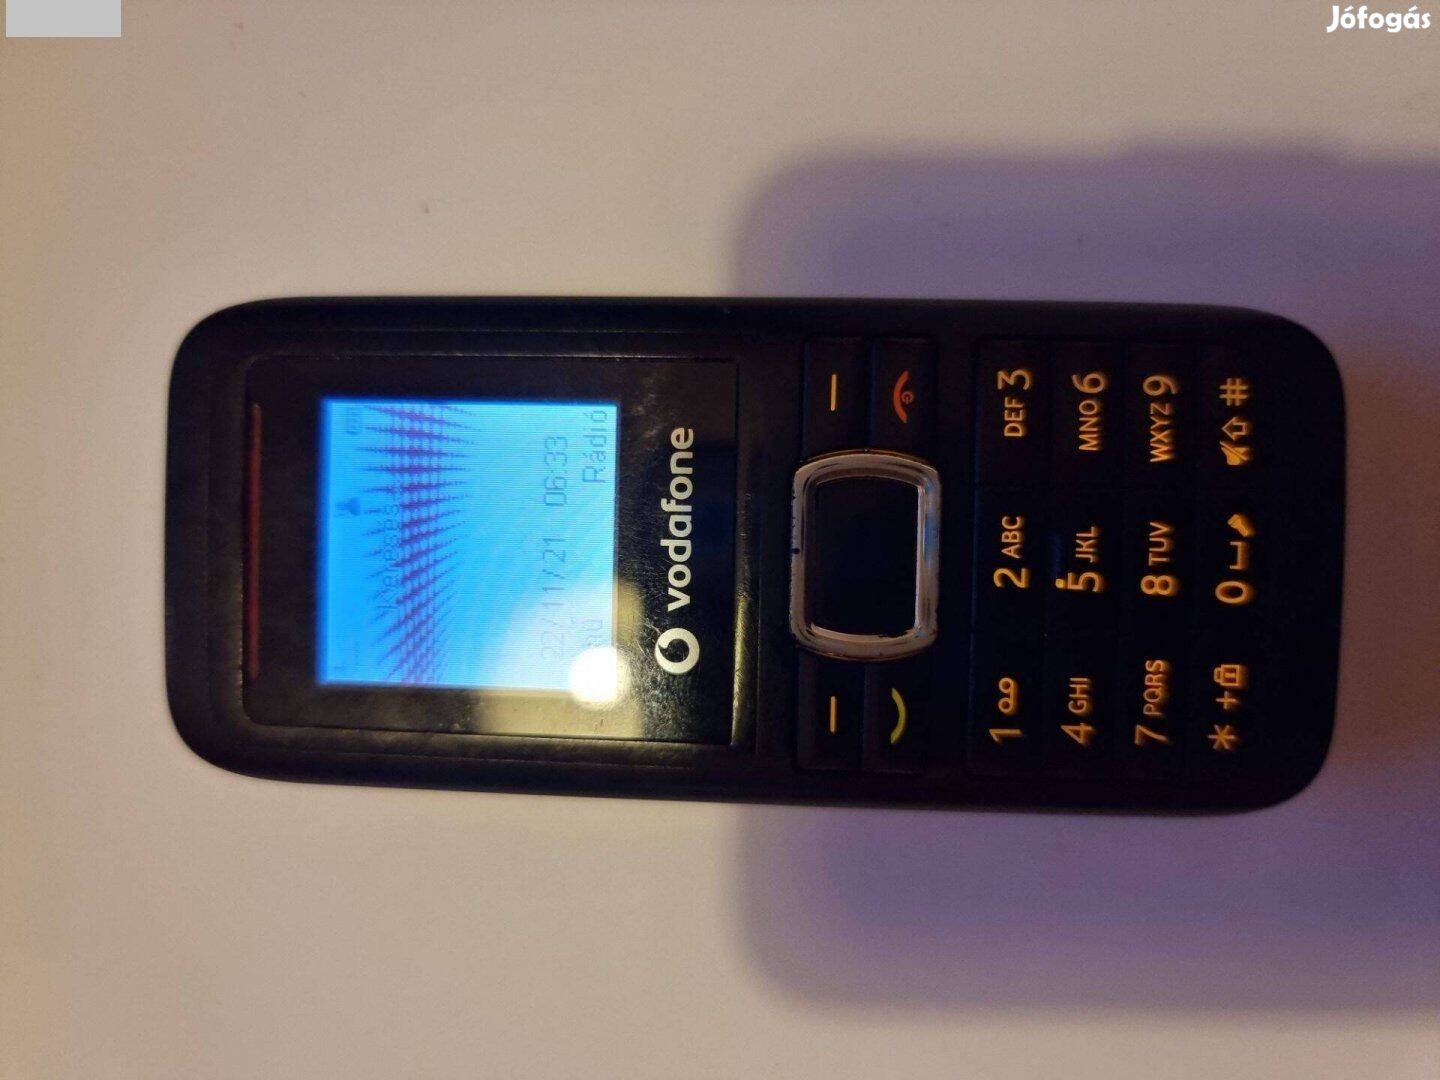 ZTE vodafone 246 mobil telefon handy eladó